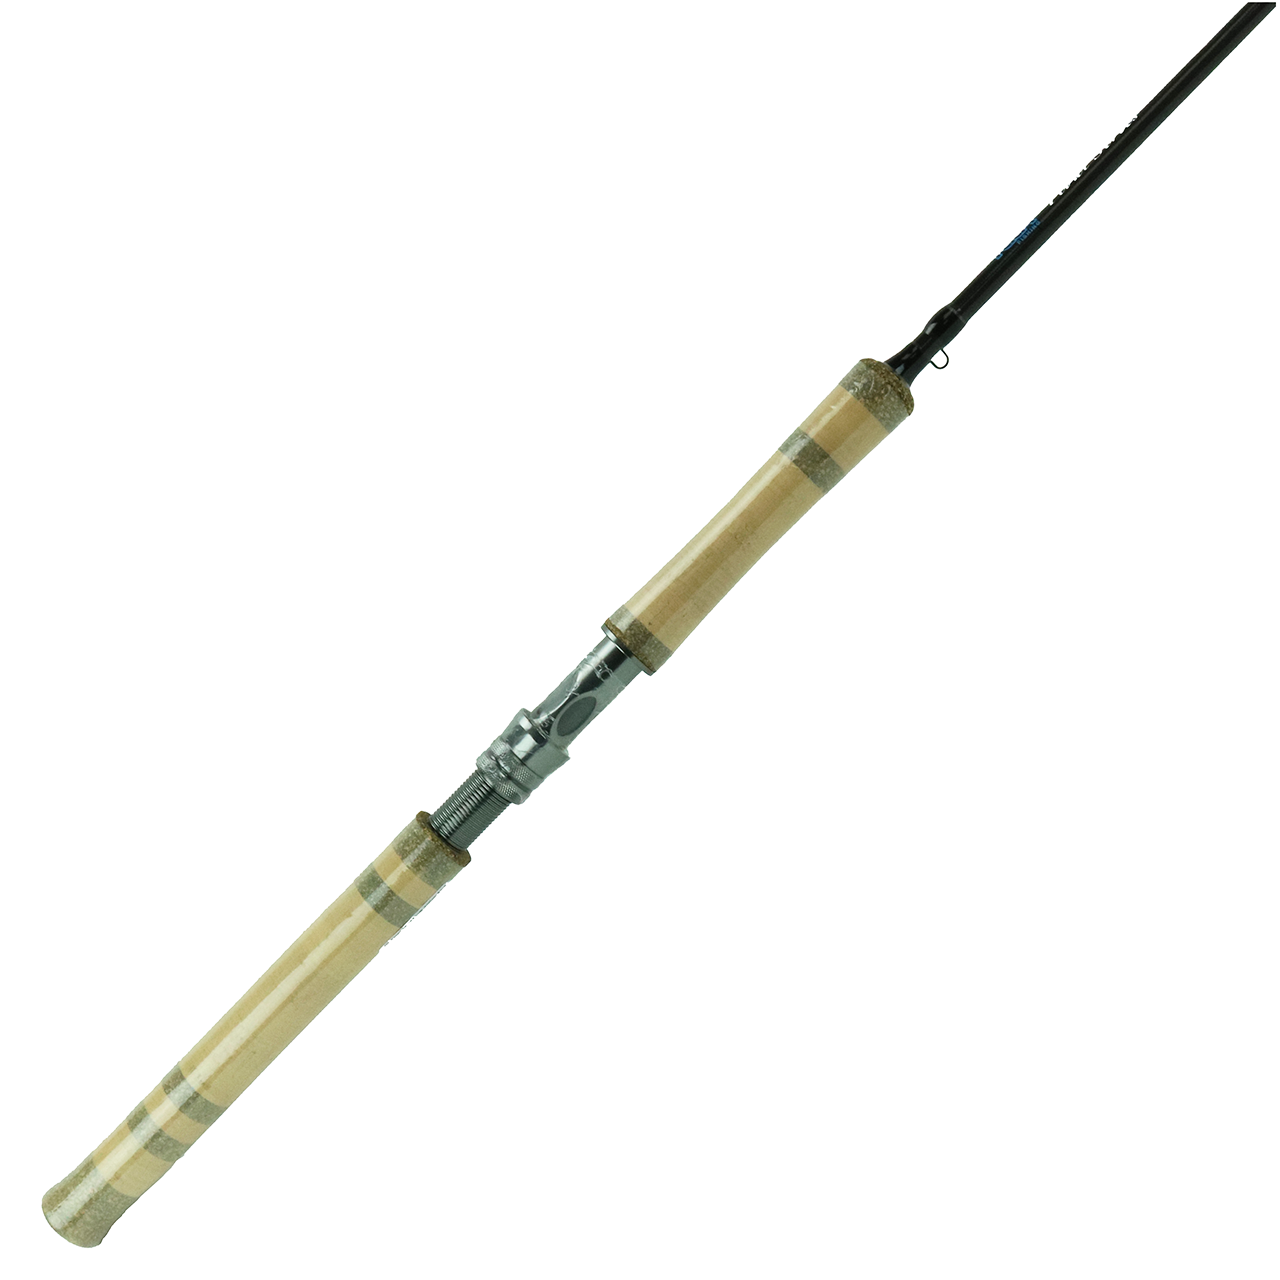 Lamiglas Trout Fishing Rods & Poles for sale